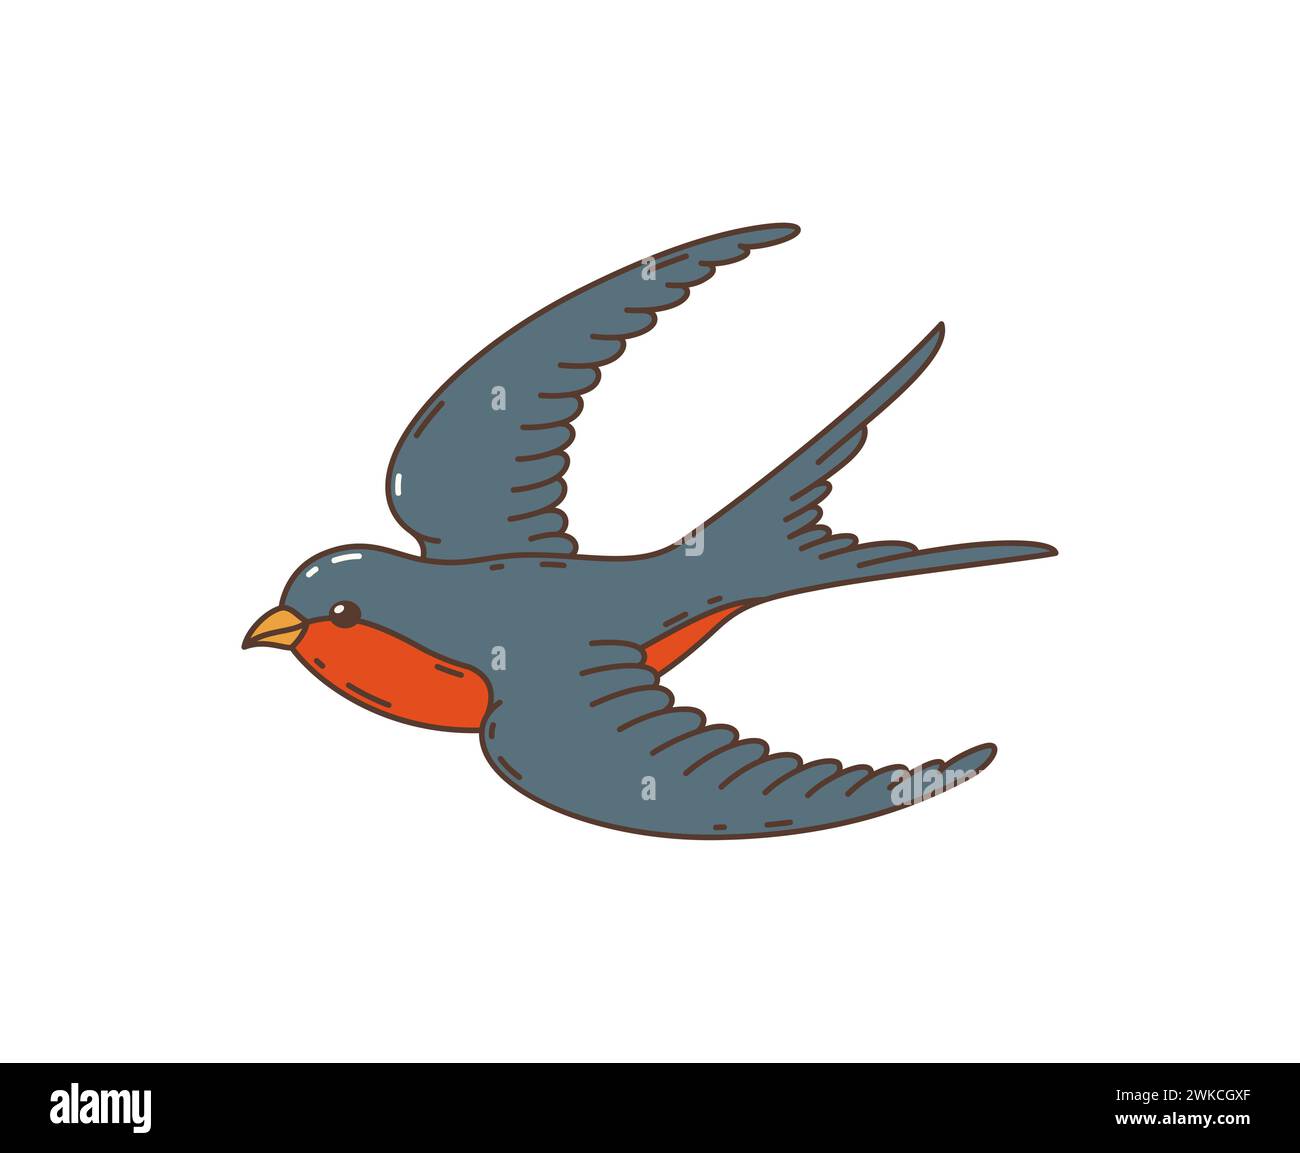 Cartoon-Retro-grooviger Hippie-Schwalbenvogel. Isoliertes Vektormartlet mit schwarzen und roten Federn, die mit ausgespreizten Flügeln fliegen. Nostalgisches Symbol für Frühling, Freiheit und Frieden, Groove, Hippie-Style Stock Vektor